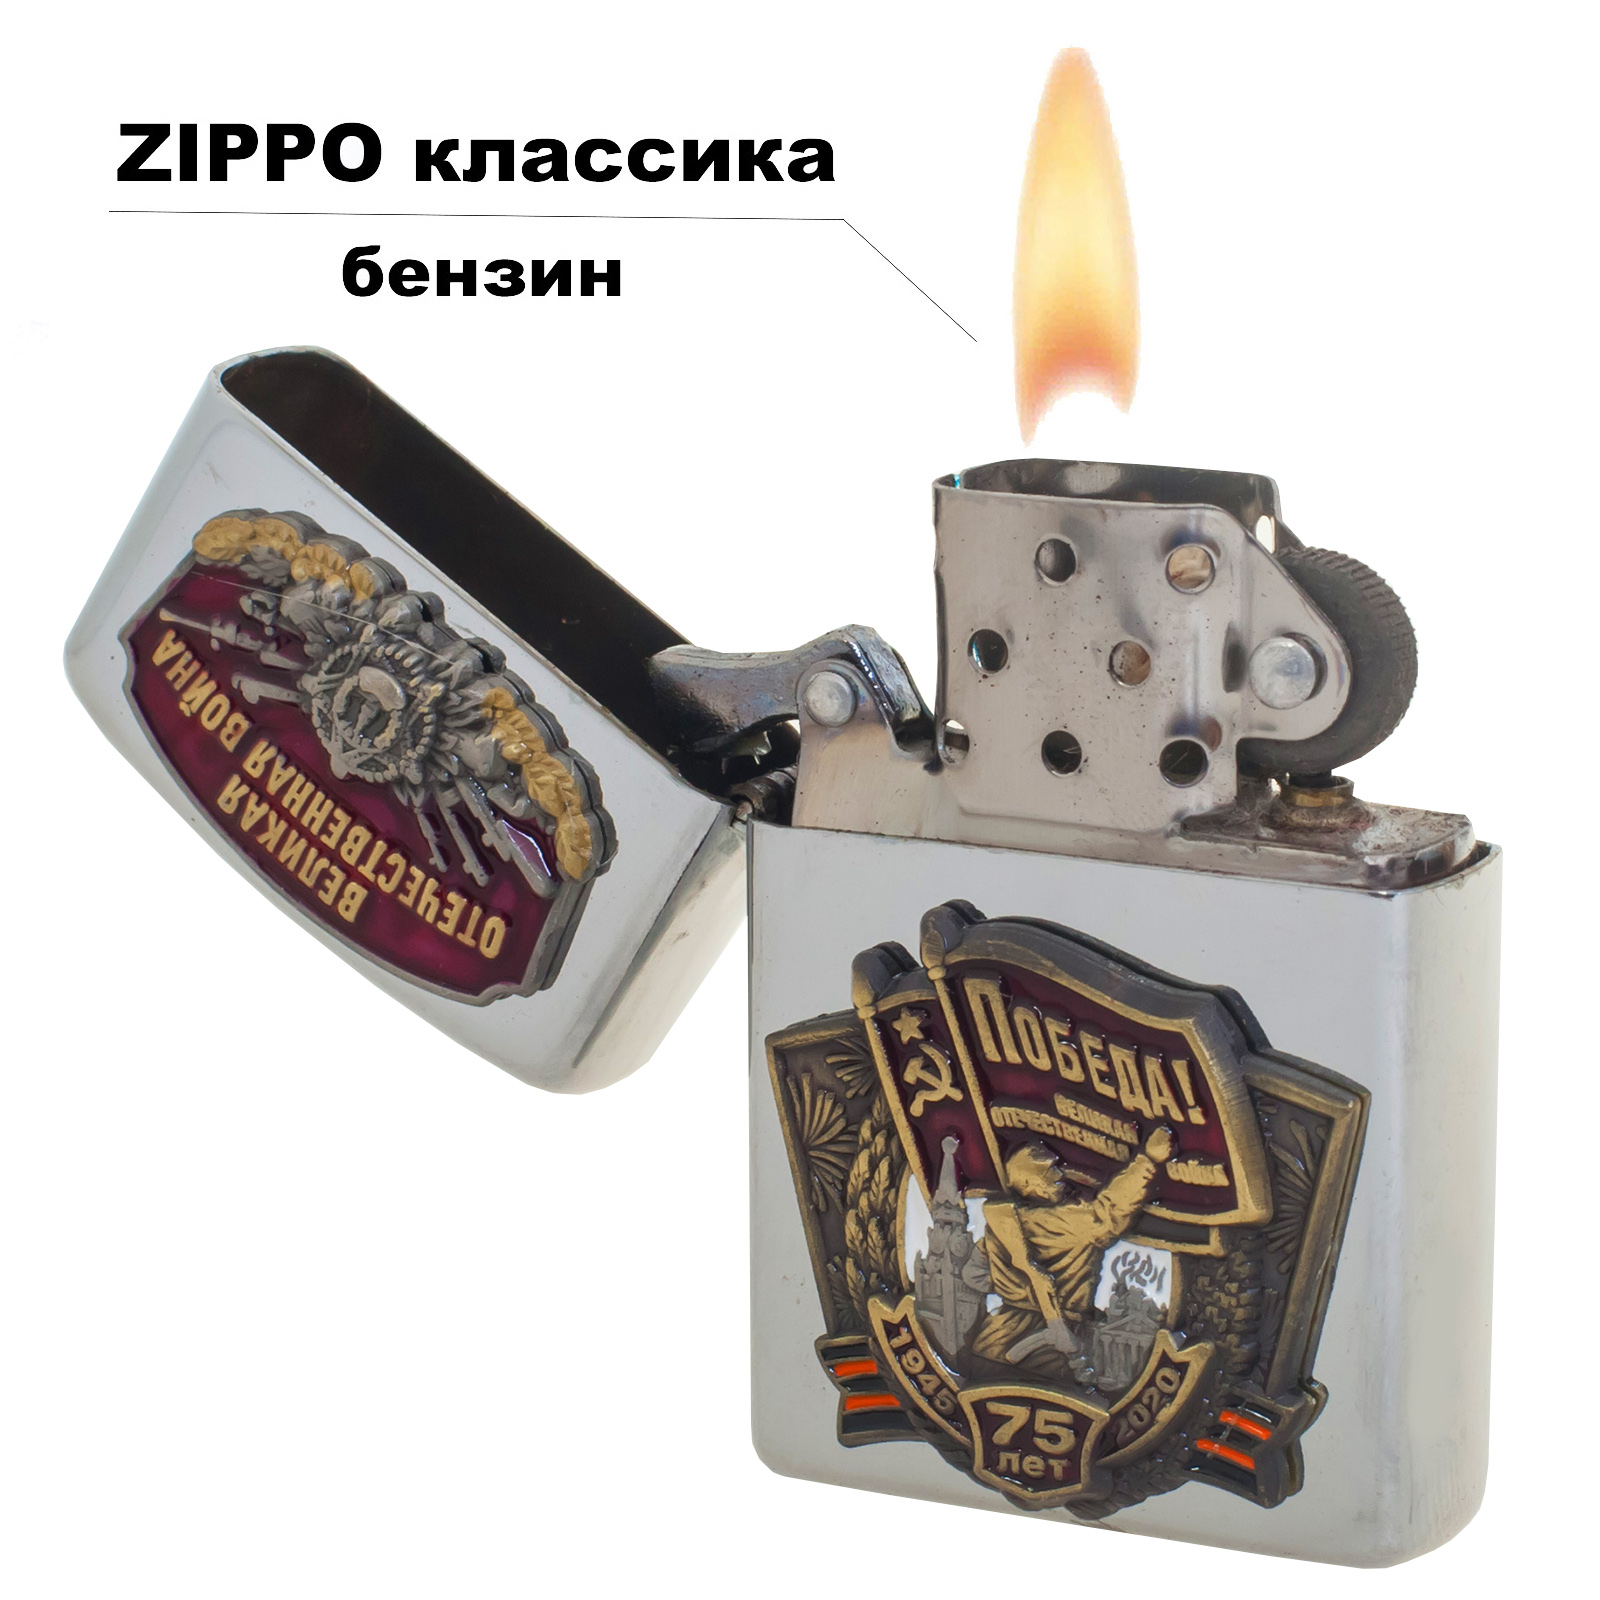 Коллекционная бензиновая зажигалка "День Победы" 